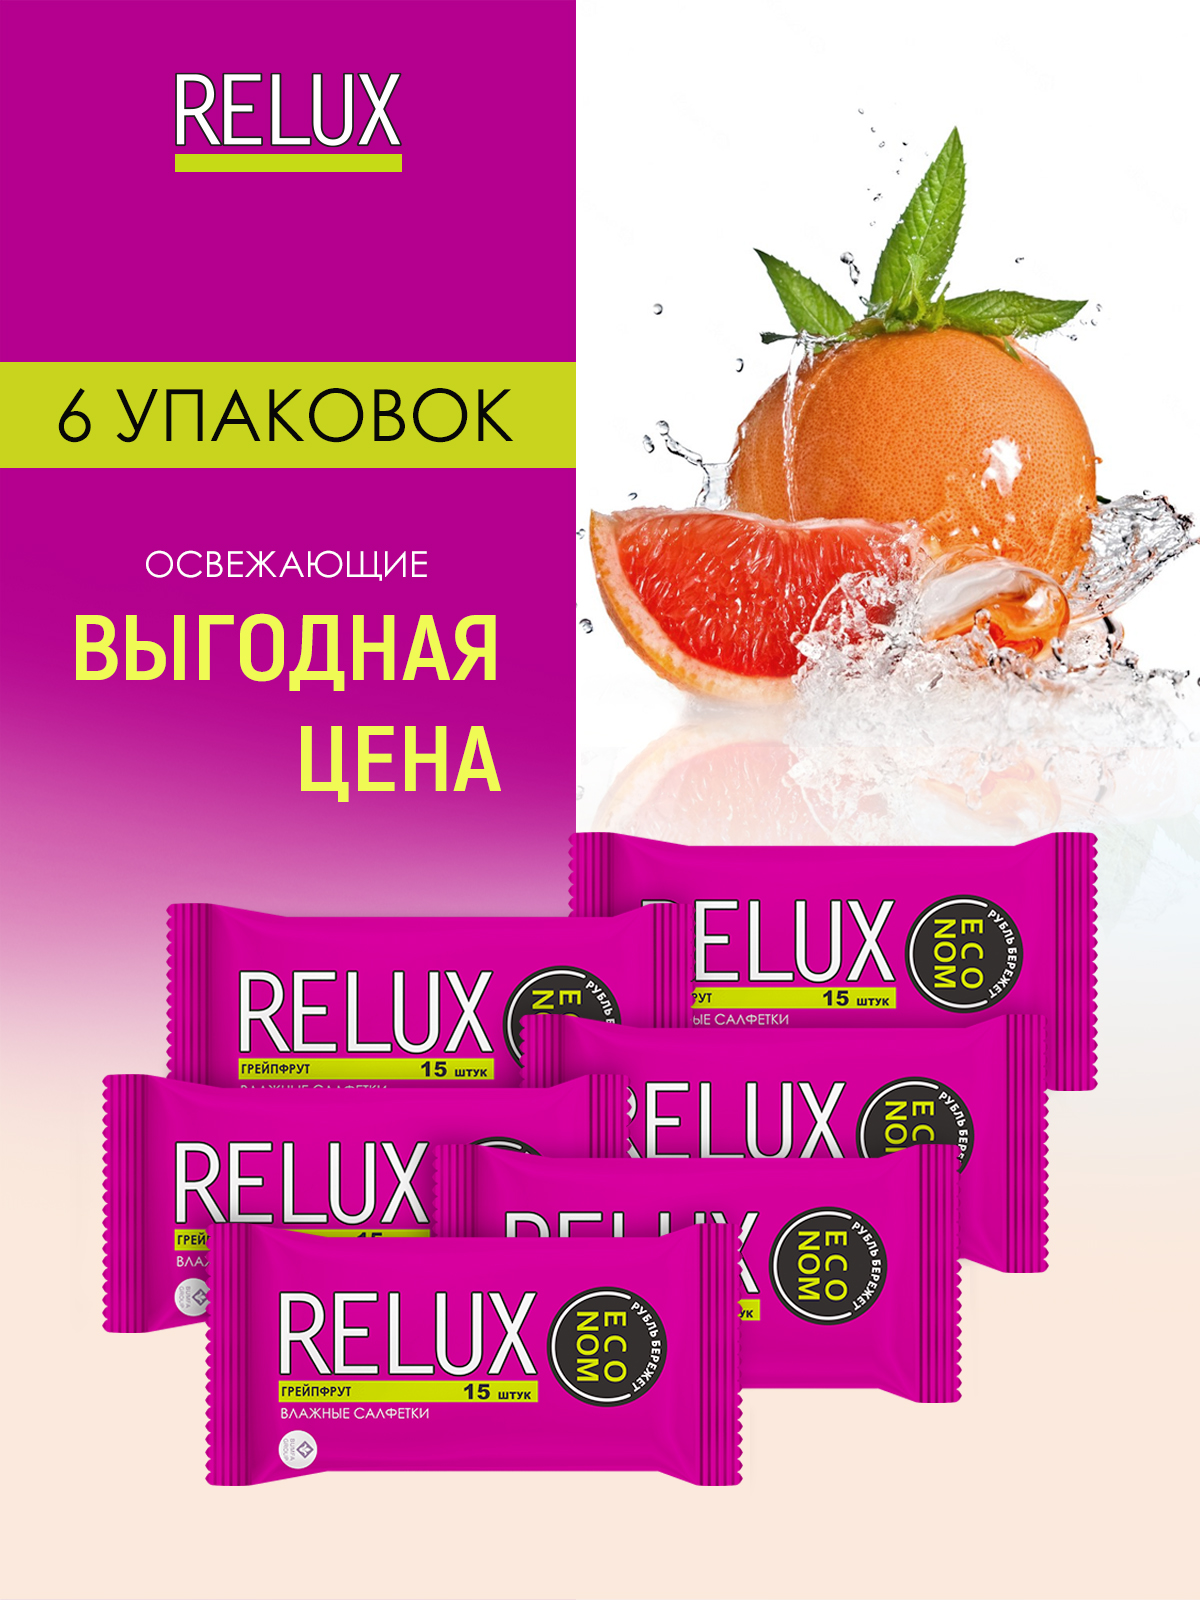 Салфетки влажные Relux освежающие грейпфрут 15шт 6 упаковок мальчики бёрджессы